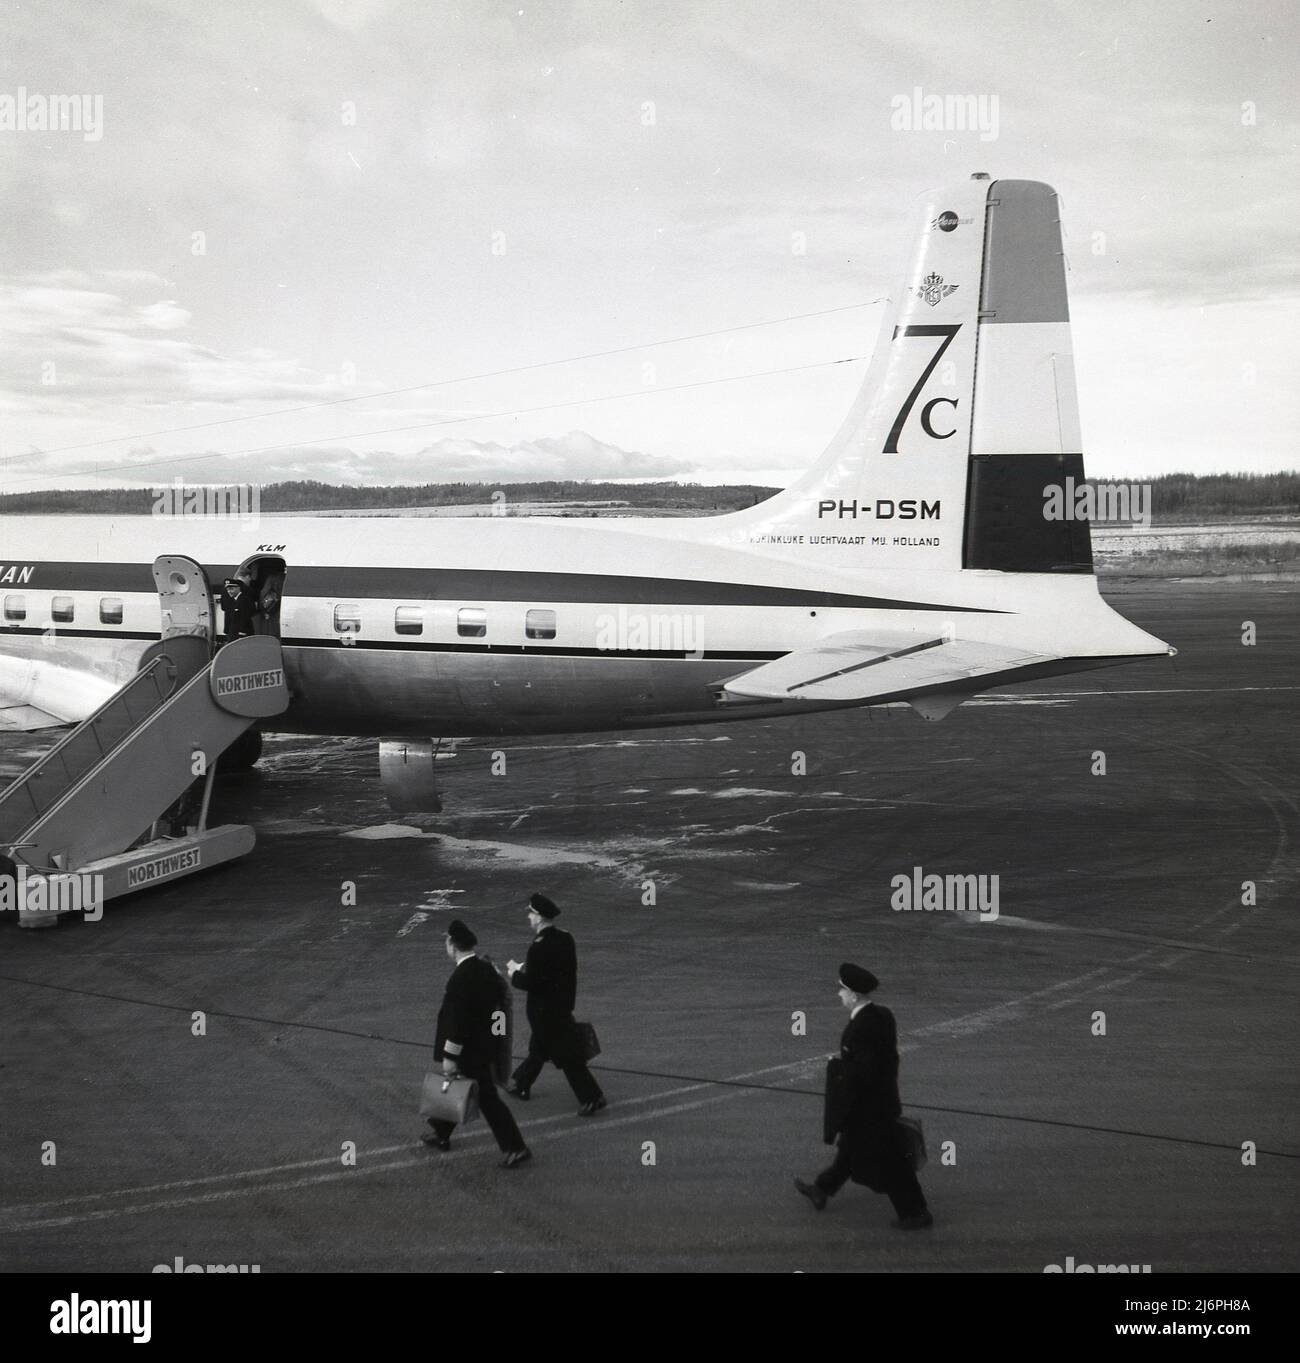 1950s, pilotes historiques sur la piste à pied pour monter à bord d'un Douglas DC-7C. KLM à l'aéroport d'Anchorage, Alaska, États-Unis. Introduit en 1956, le DC-7C (Seven Seas) était une variante à portée étendue de l'avion DC-7 original, avec des moteurs améliorés et une capacité de carburant accrue. Ces modifications ont signifié qu'elle avait une capacité transatlantique sans escale et ont été ajoutées pour attirer les transporteurs aériens européens. Les chiffres 7c sont visibles sur le plan arrière-plan. Banque D'Images